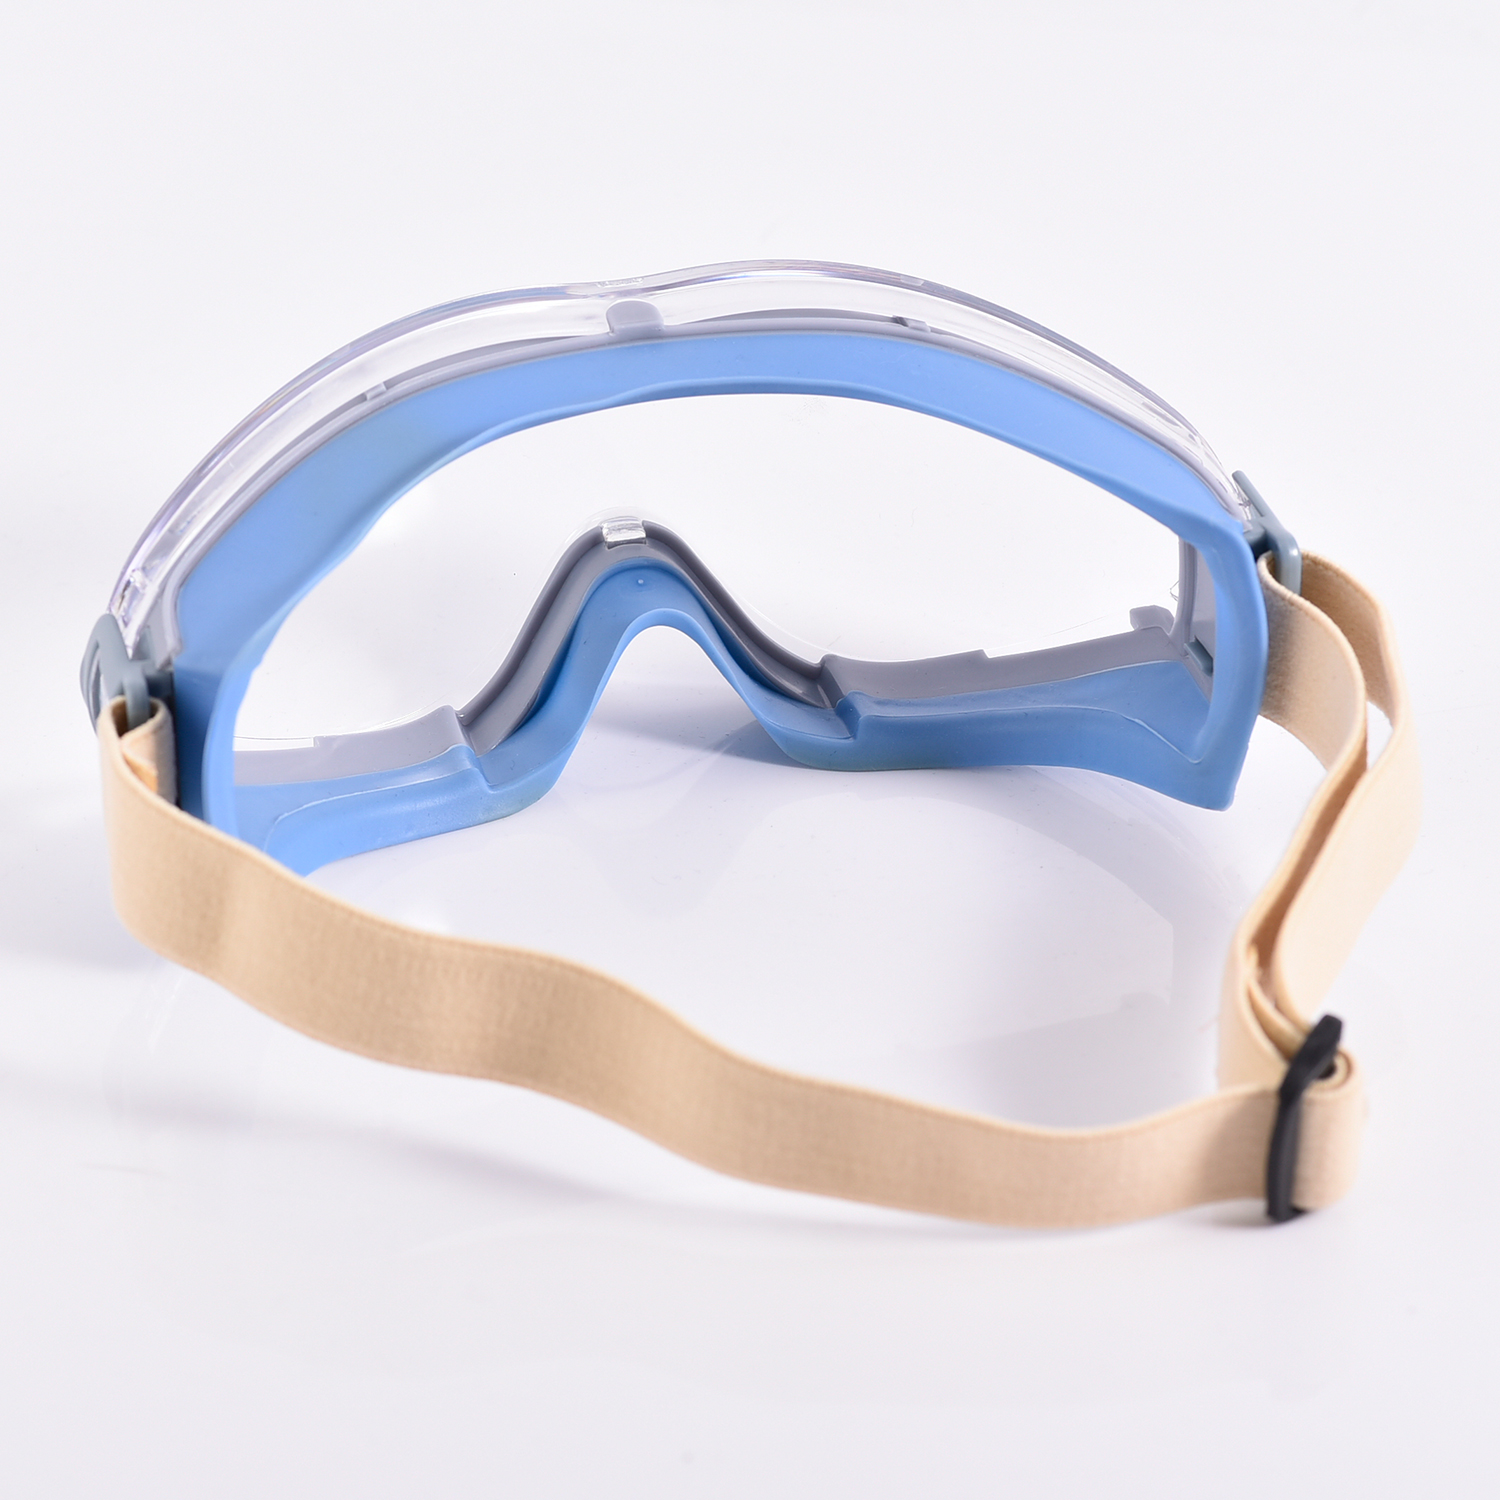 Одобренные защитные очки KS504 Blue